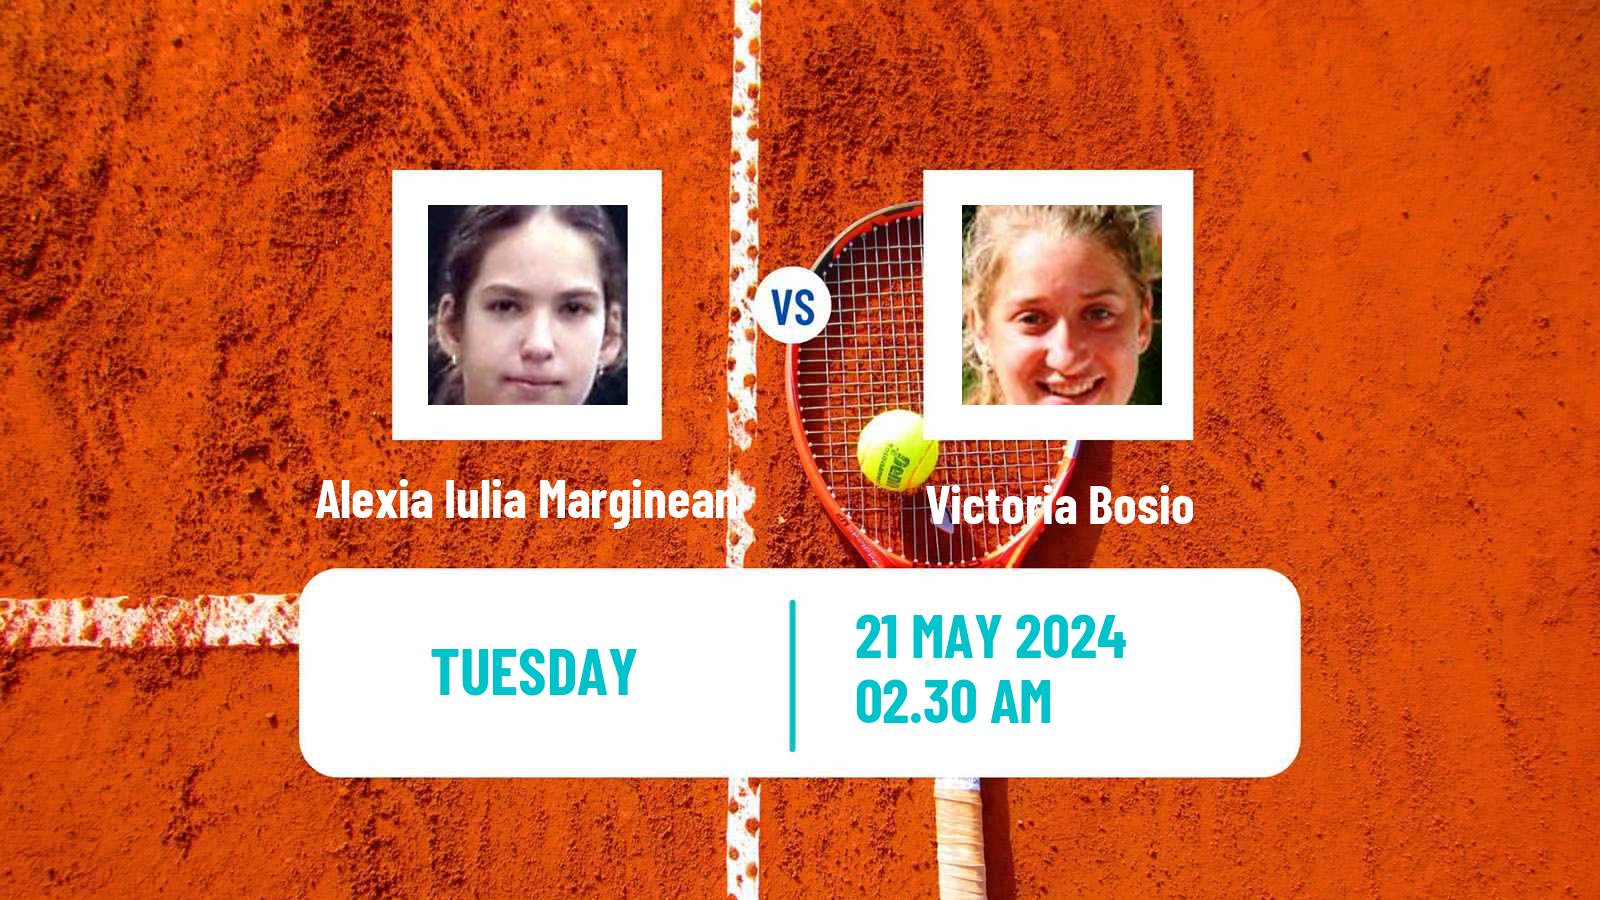 Tennis ITF W15 Bucharest 2 Women Alexia Iulia Marginean - Victoria Bosio